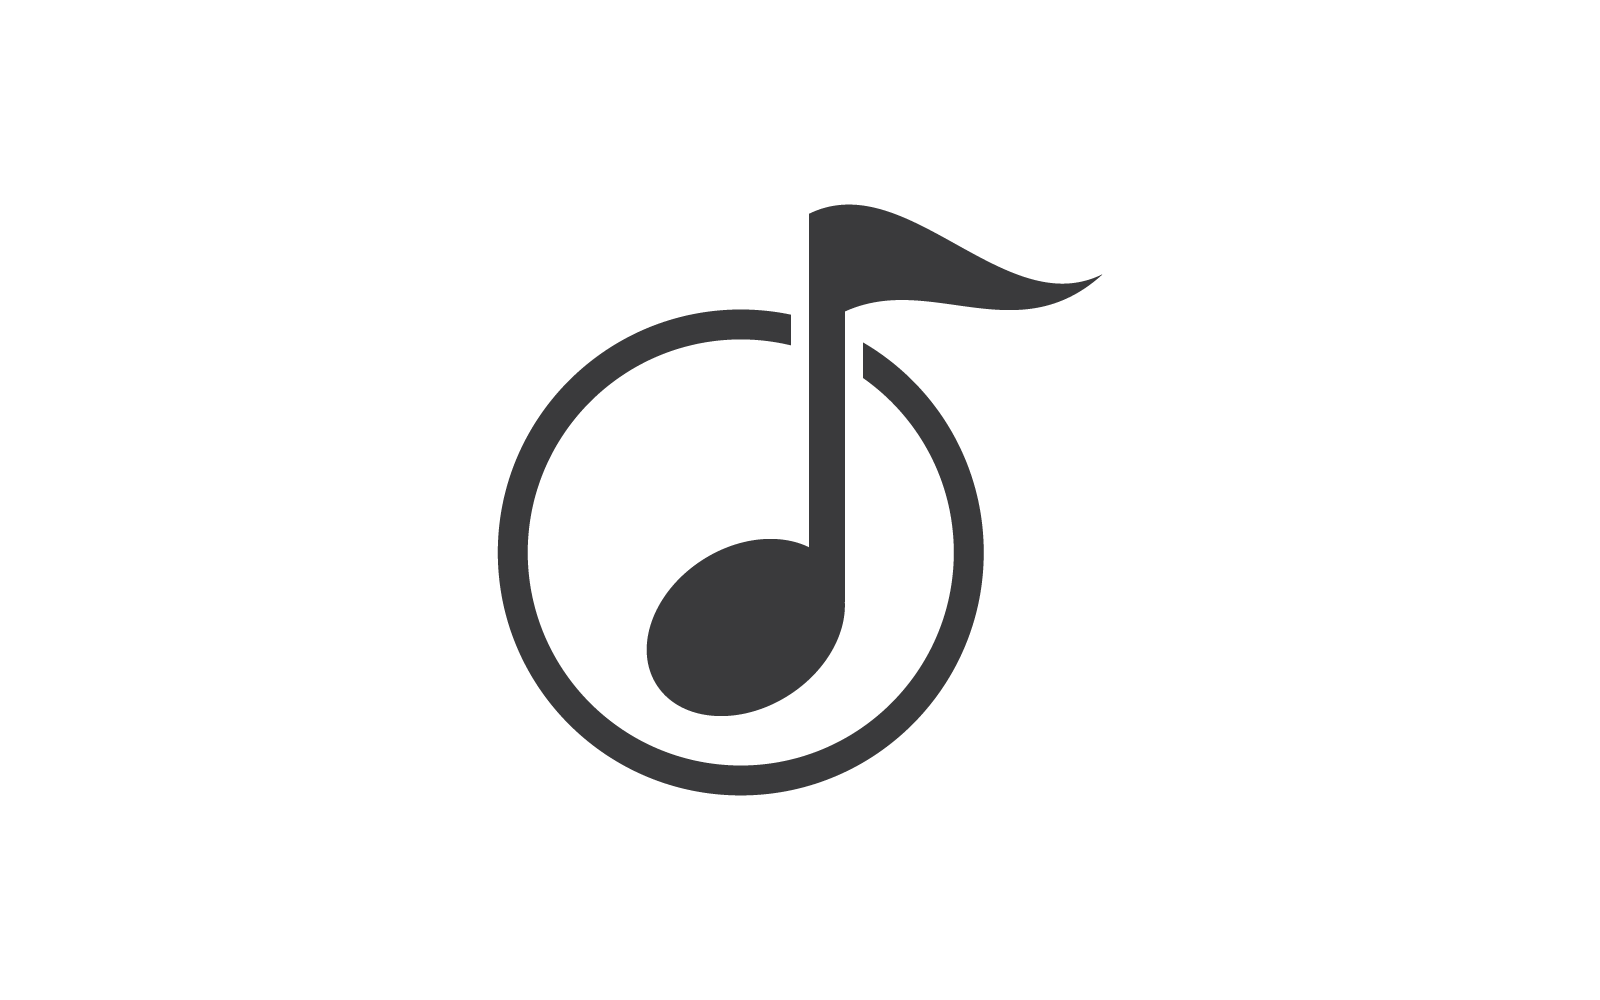 Disegno dell'illustrazione vettoriale del logo della nota musicale